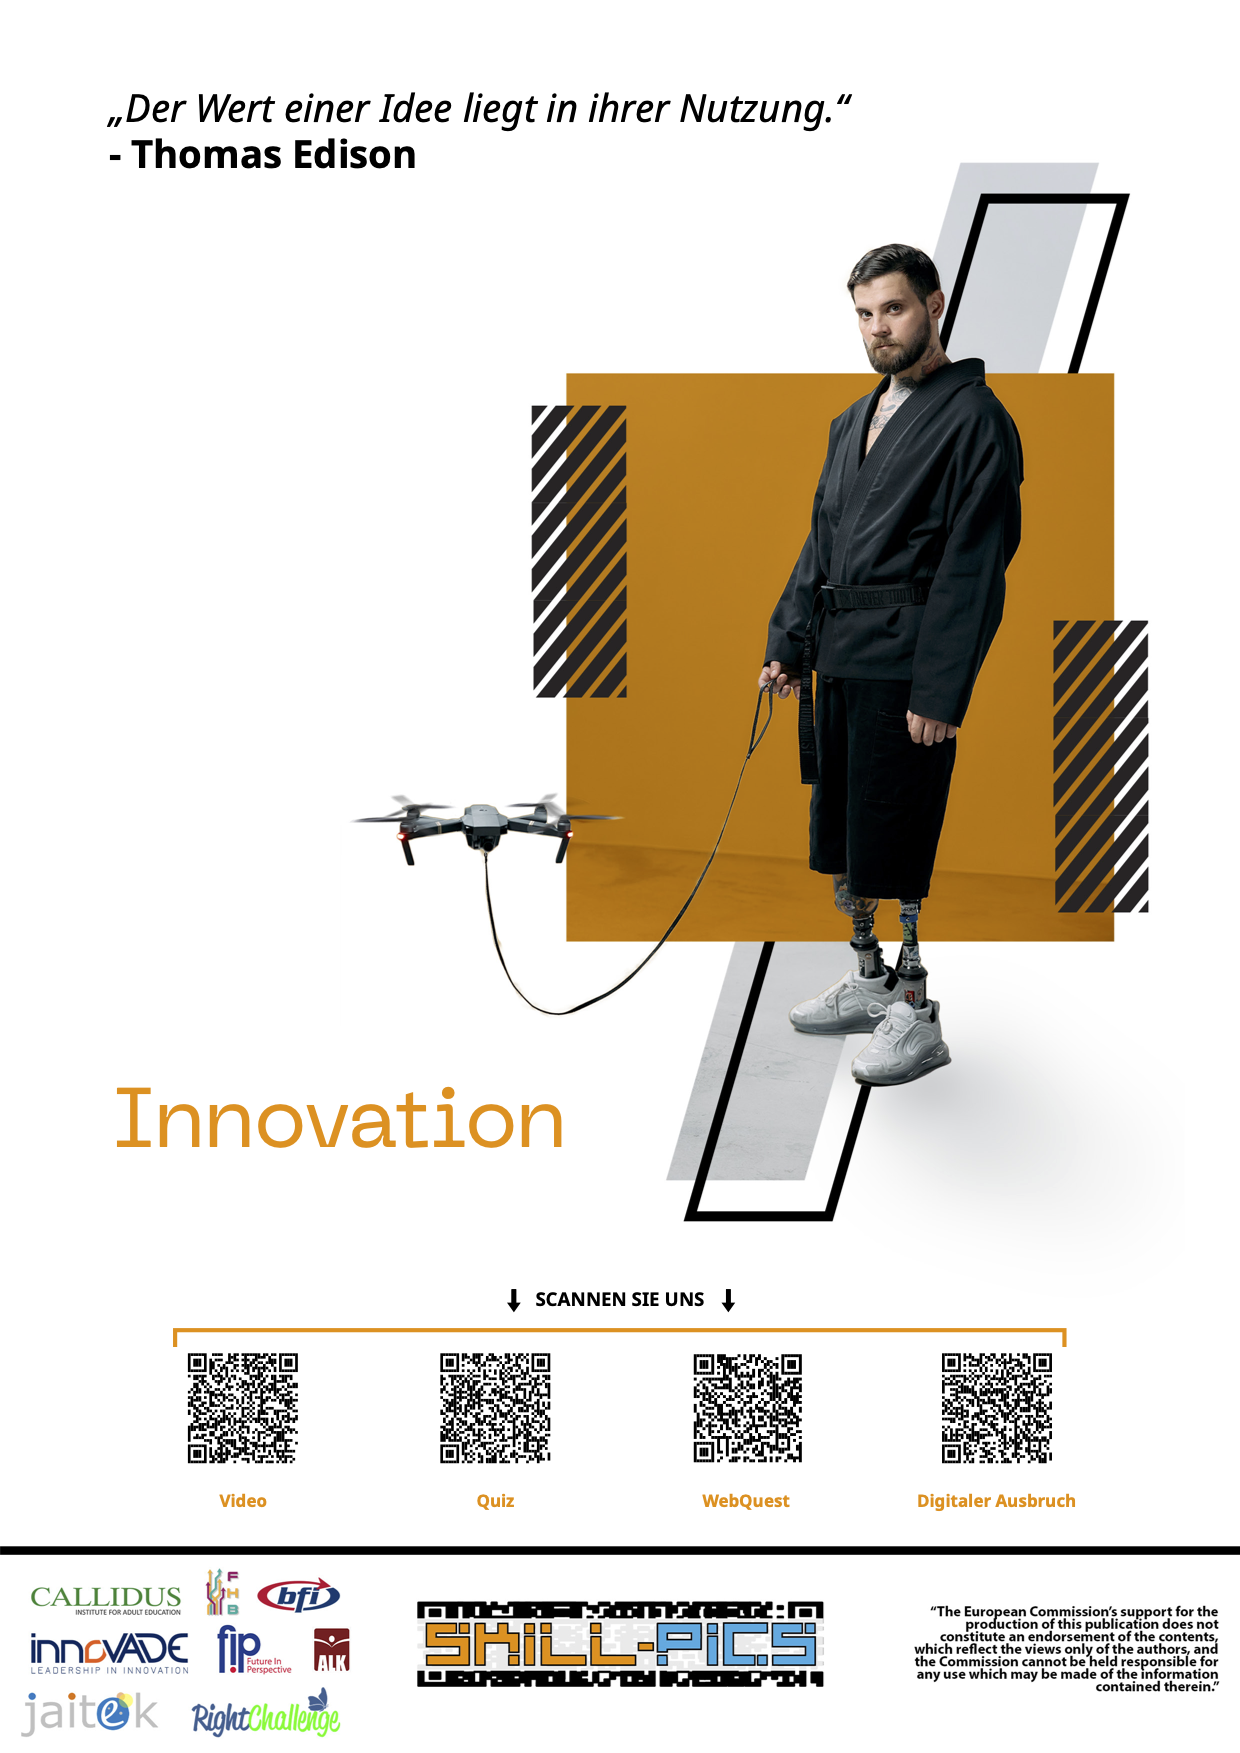 Innovation (IG1)